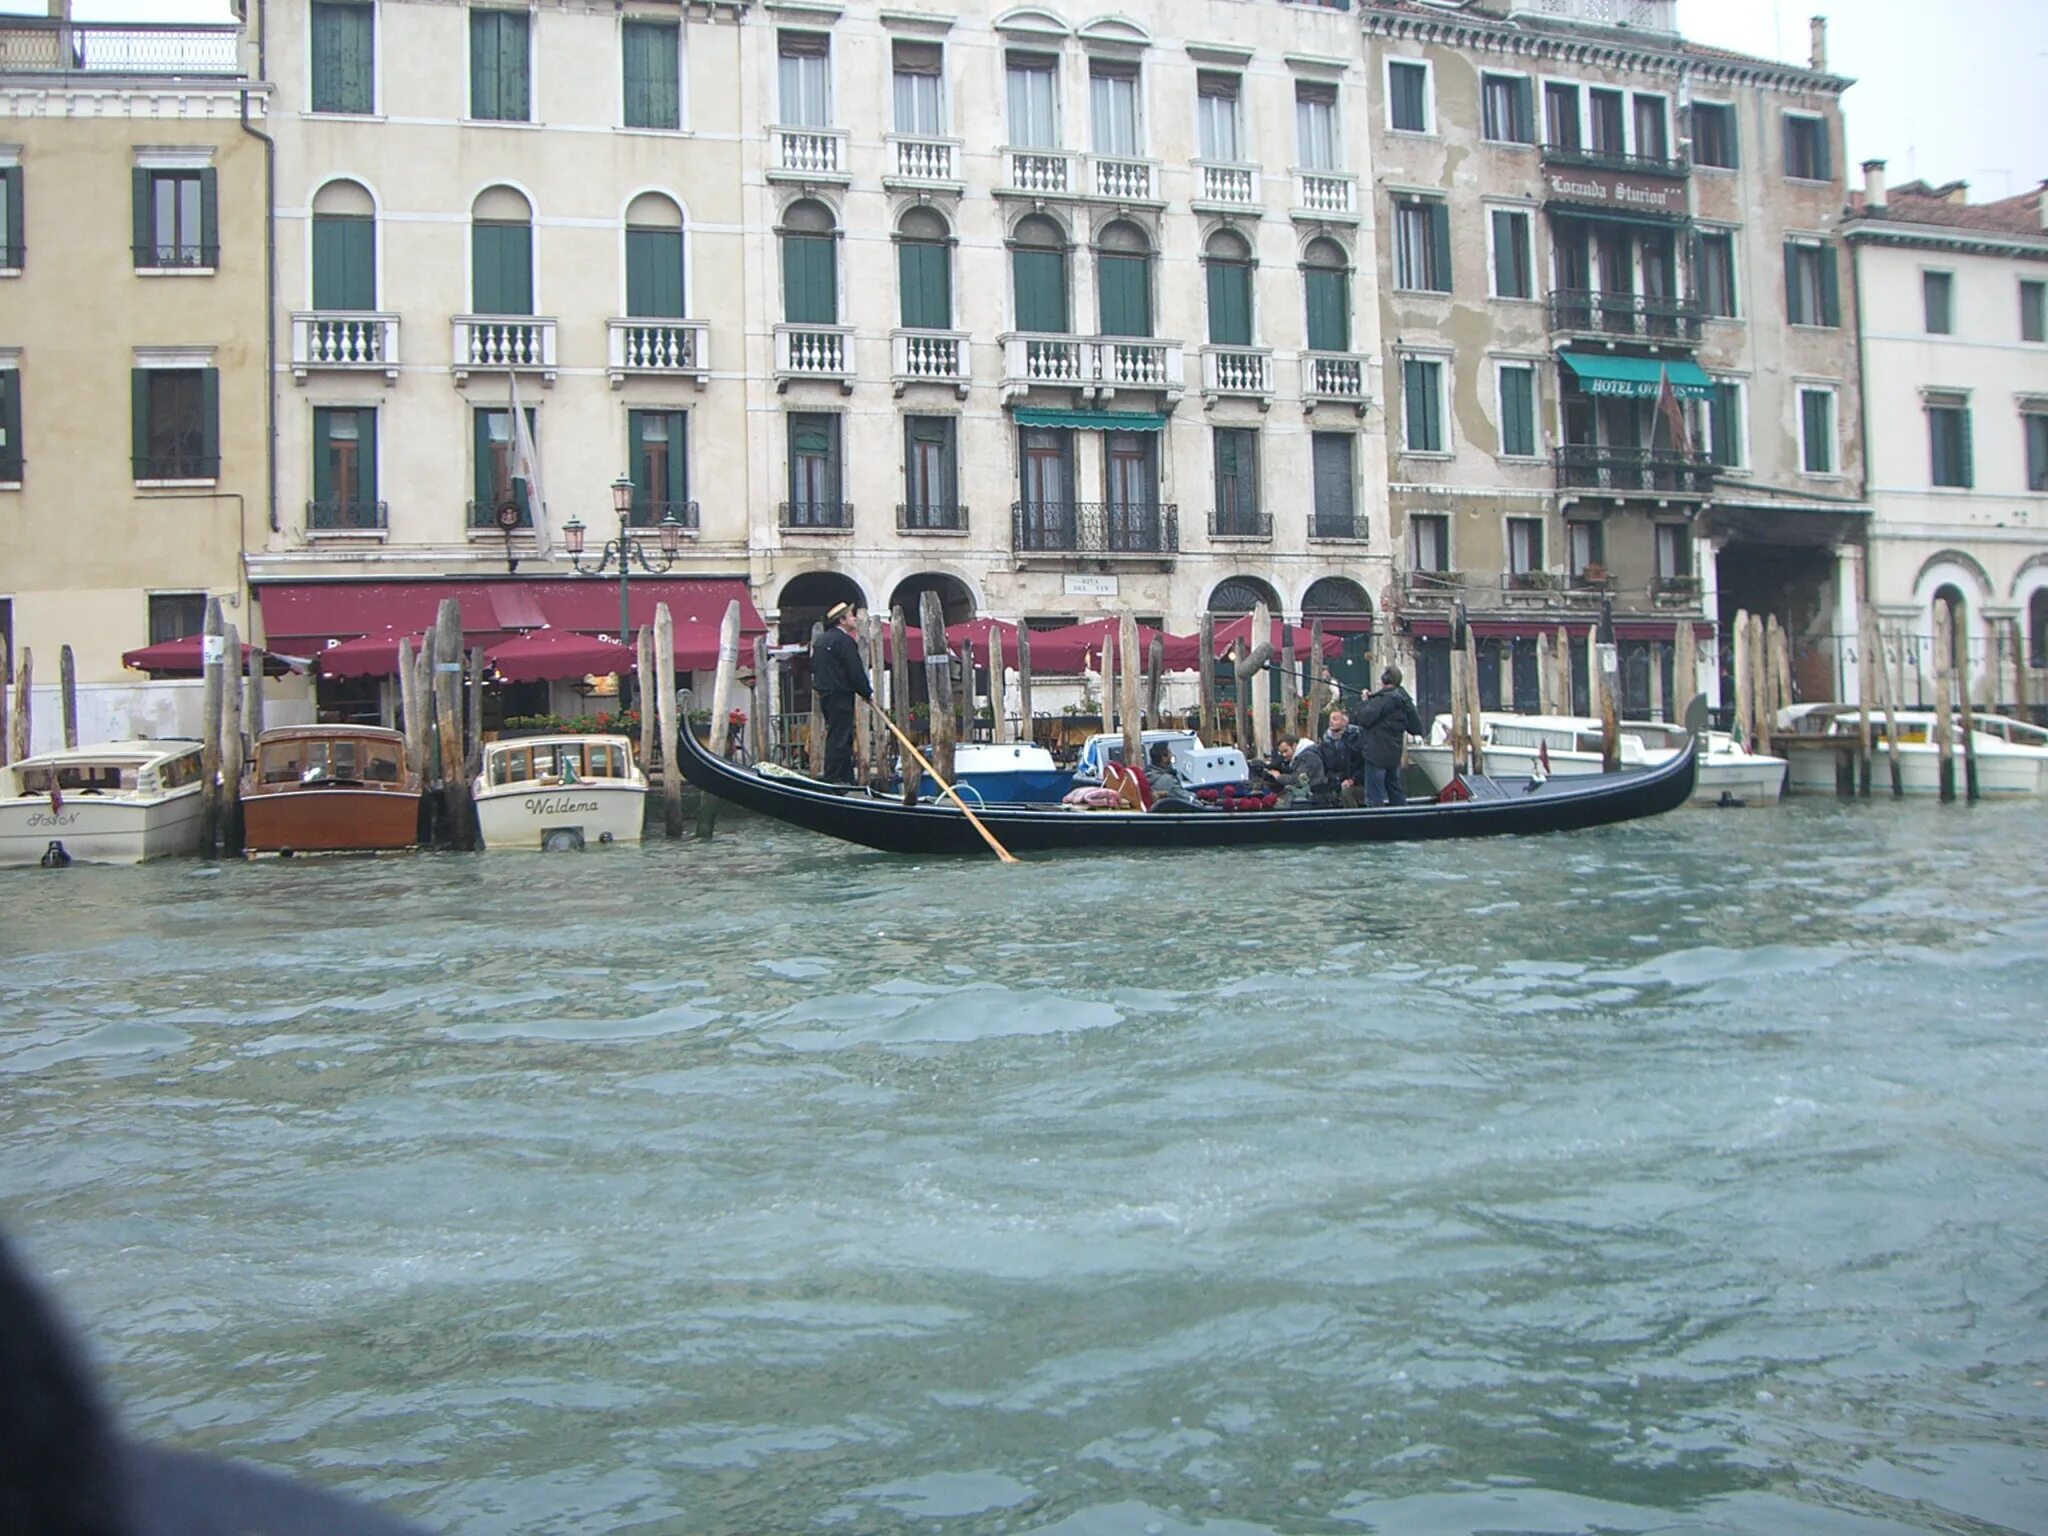 Вивальди венеция